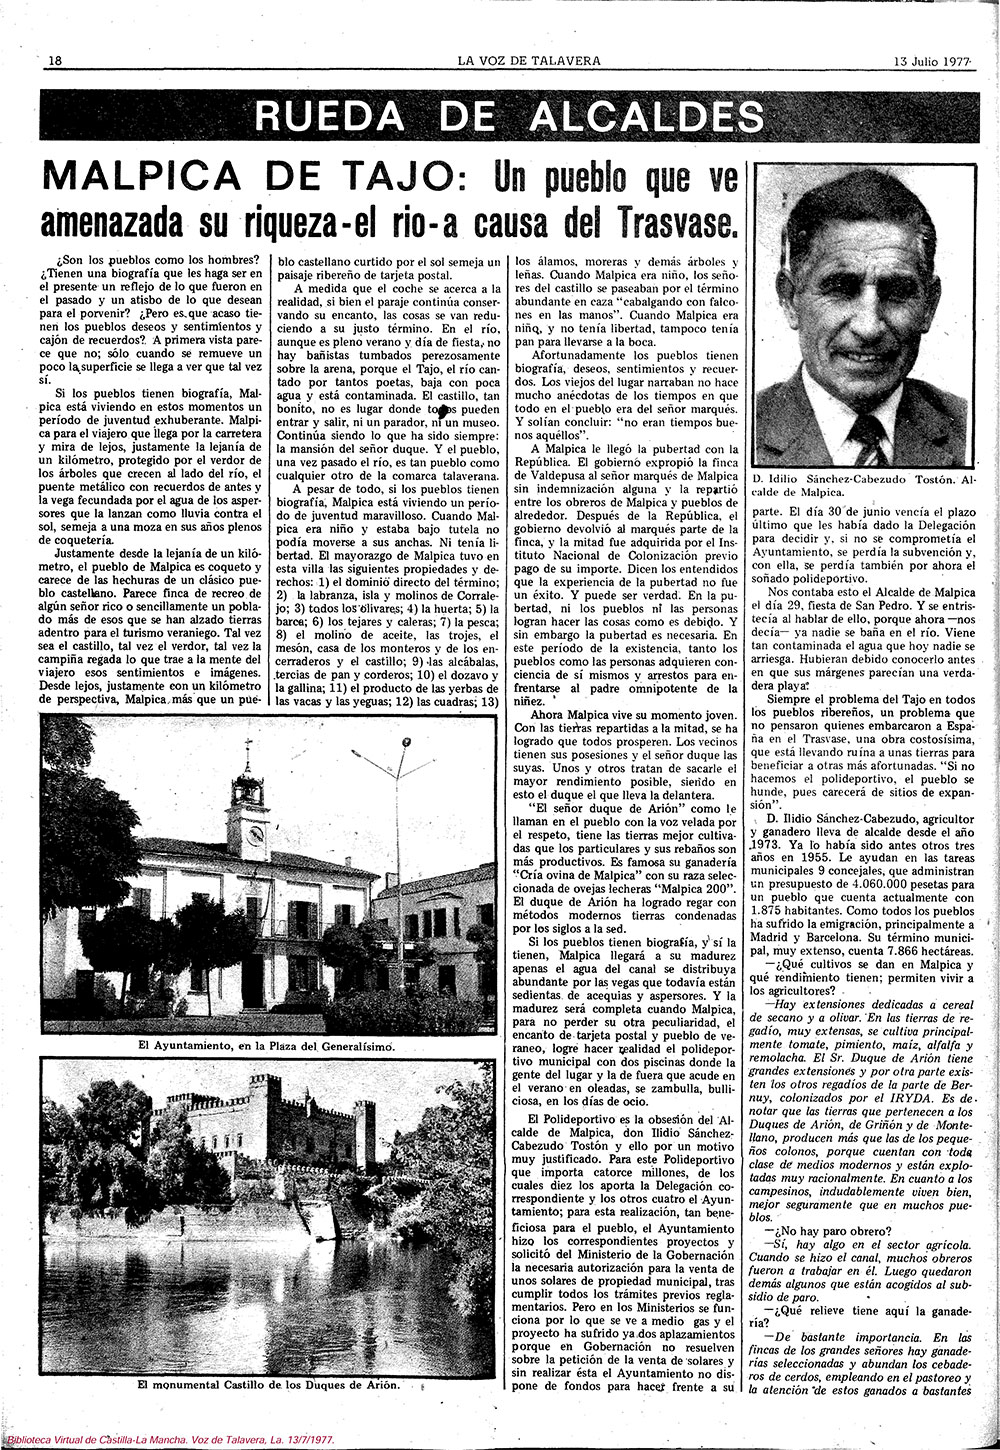 Entrevista al alcalde de Malpica de Tajo 1: D. Ilidio Sánchez-Cabezudo Tostón-La Voz de Talavera, 13-07-1977